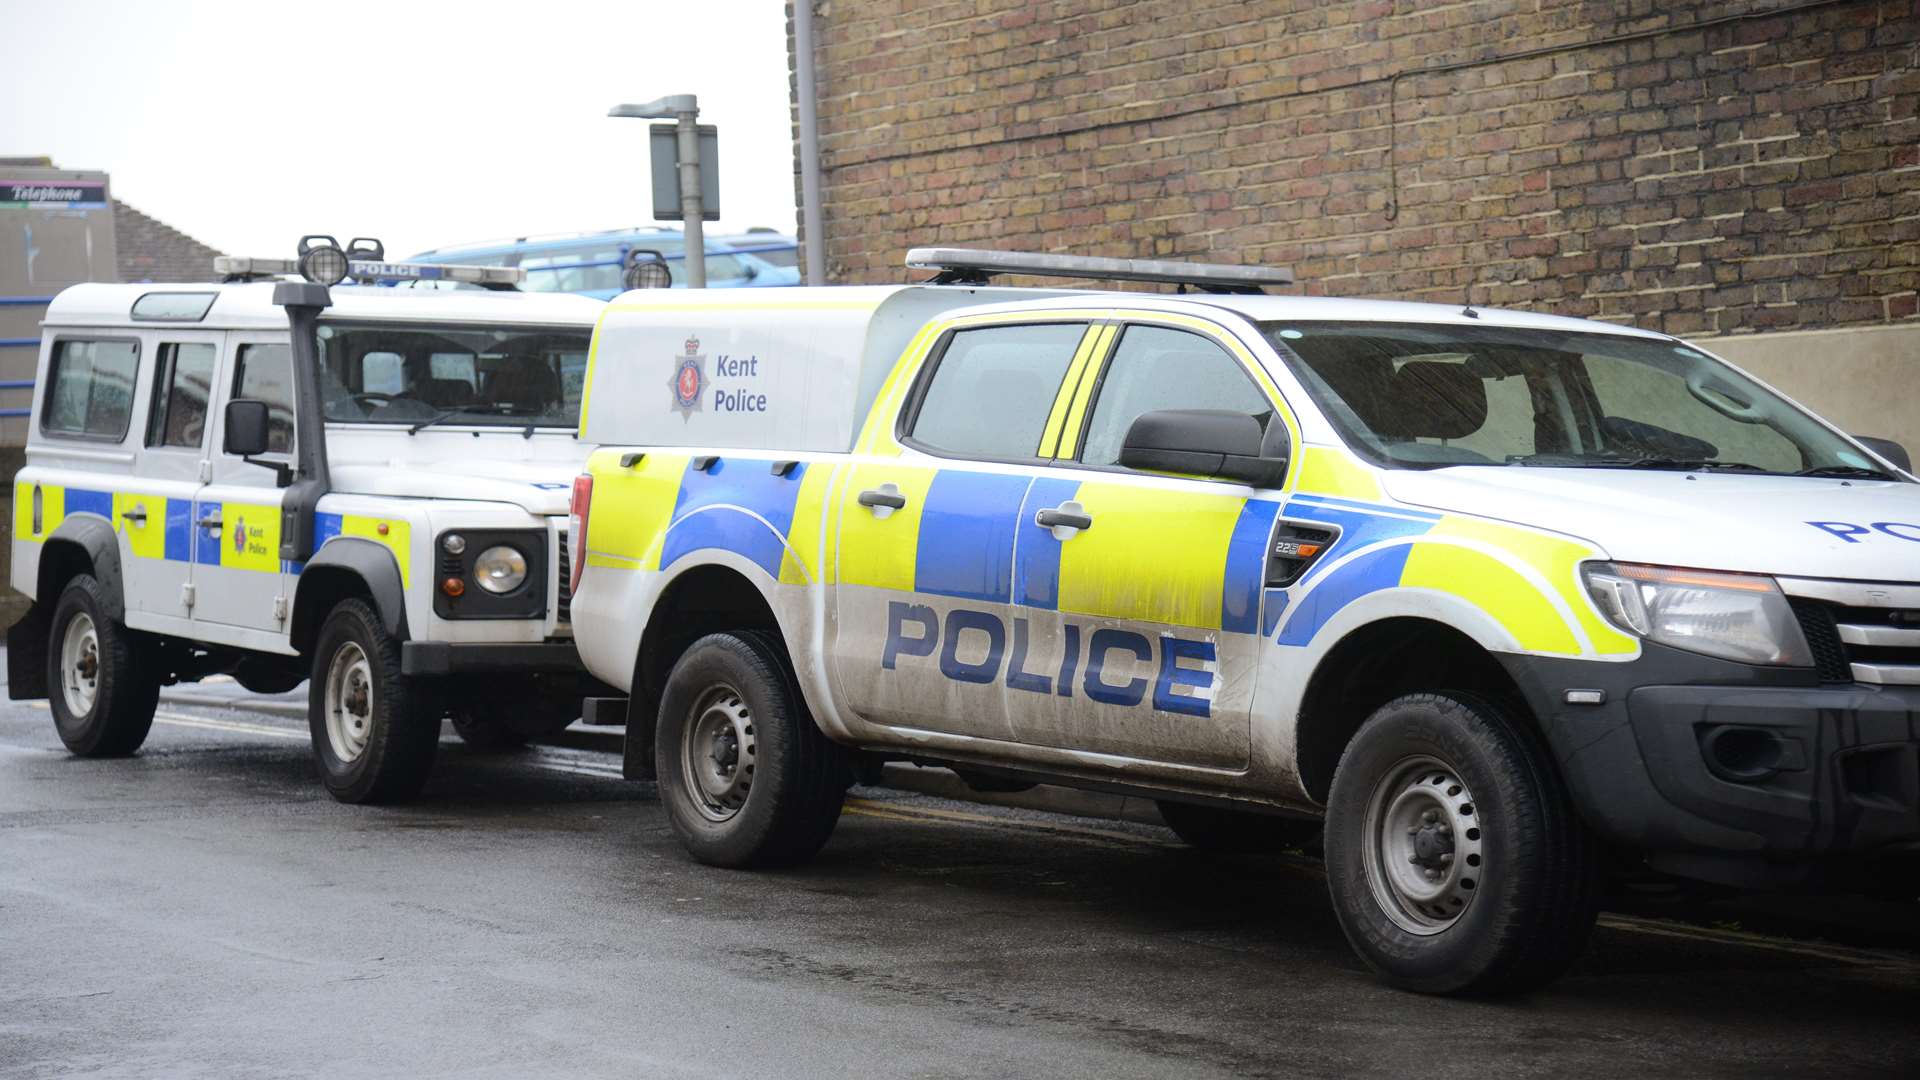 Police vehicles at the raid